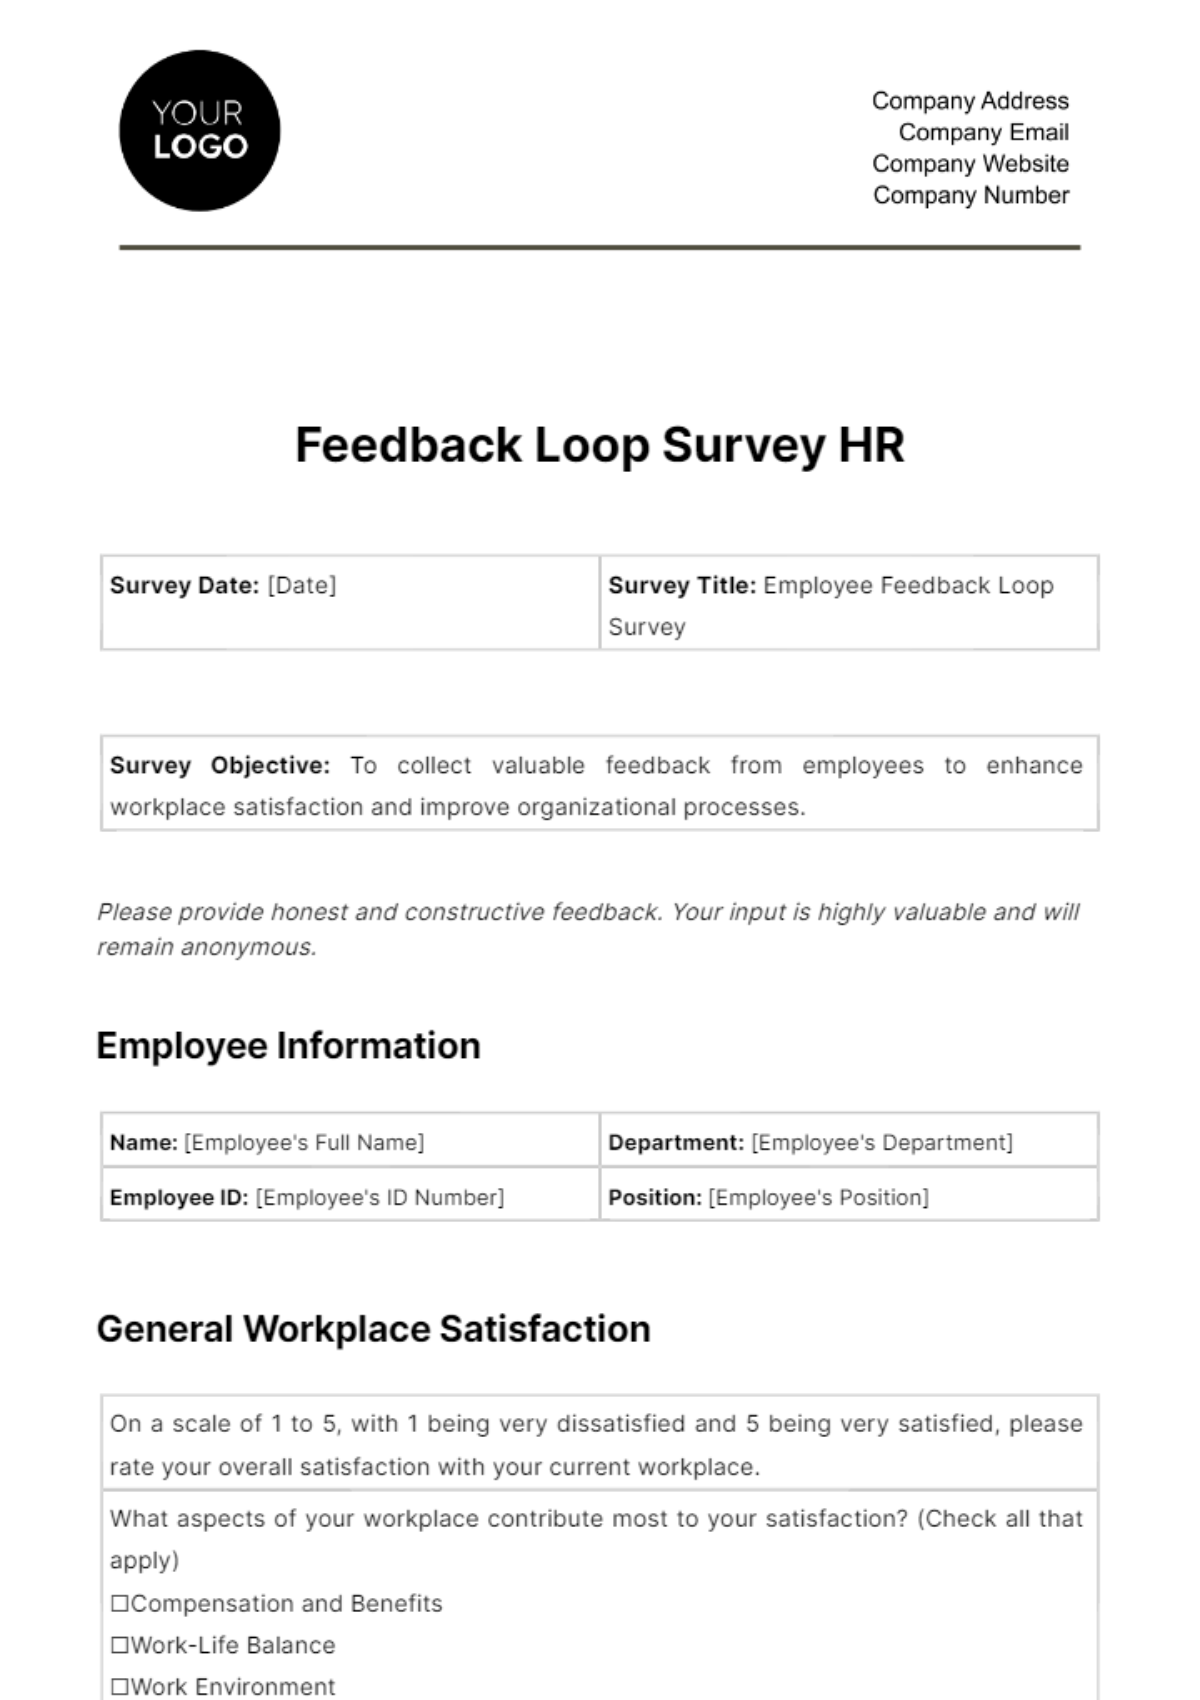 Feedback Loop Survey HR Template